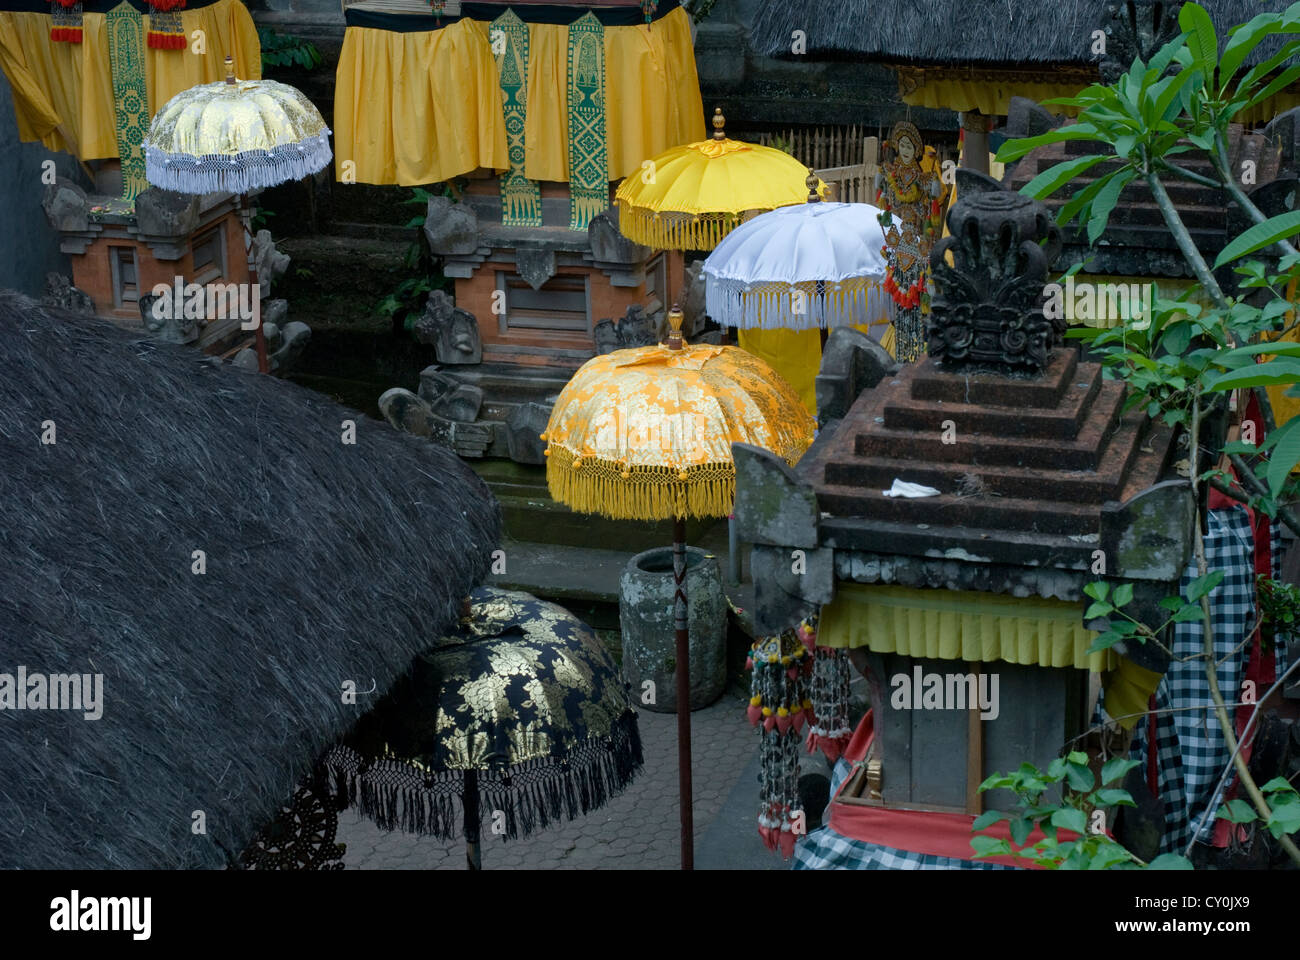 Bunte Sonnenschirme schmücken einen animistischen Tempel in Ubud, Bali, Indonesien Stockfoto